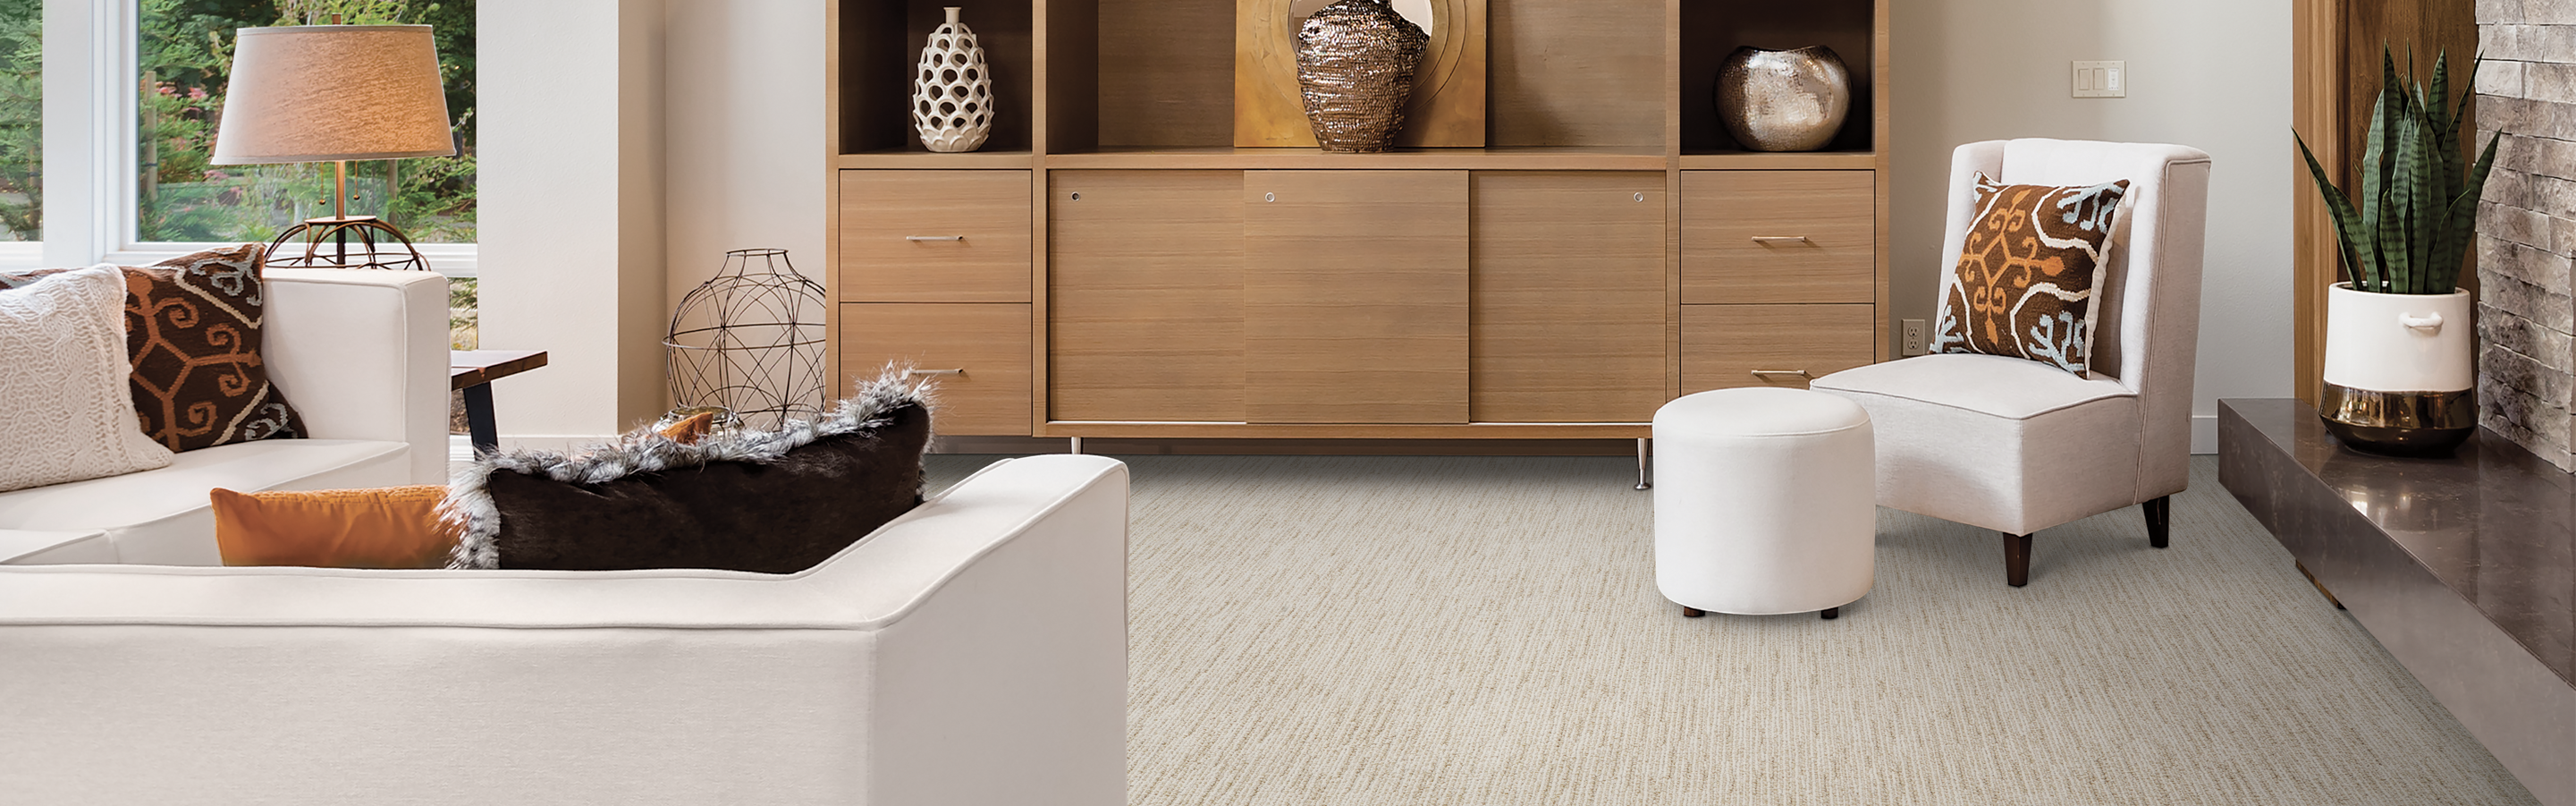 neutral beige patterned carpet in living room